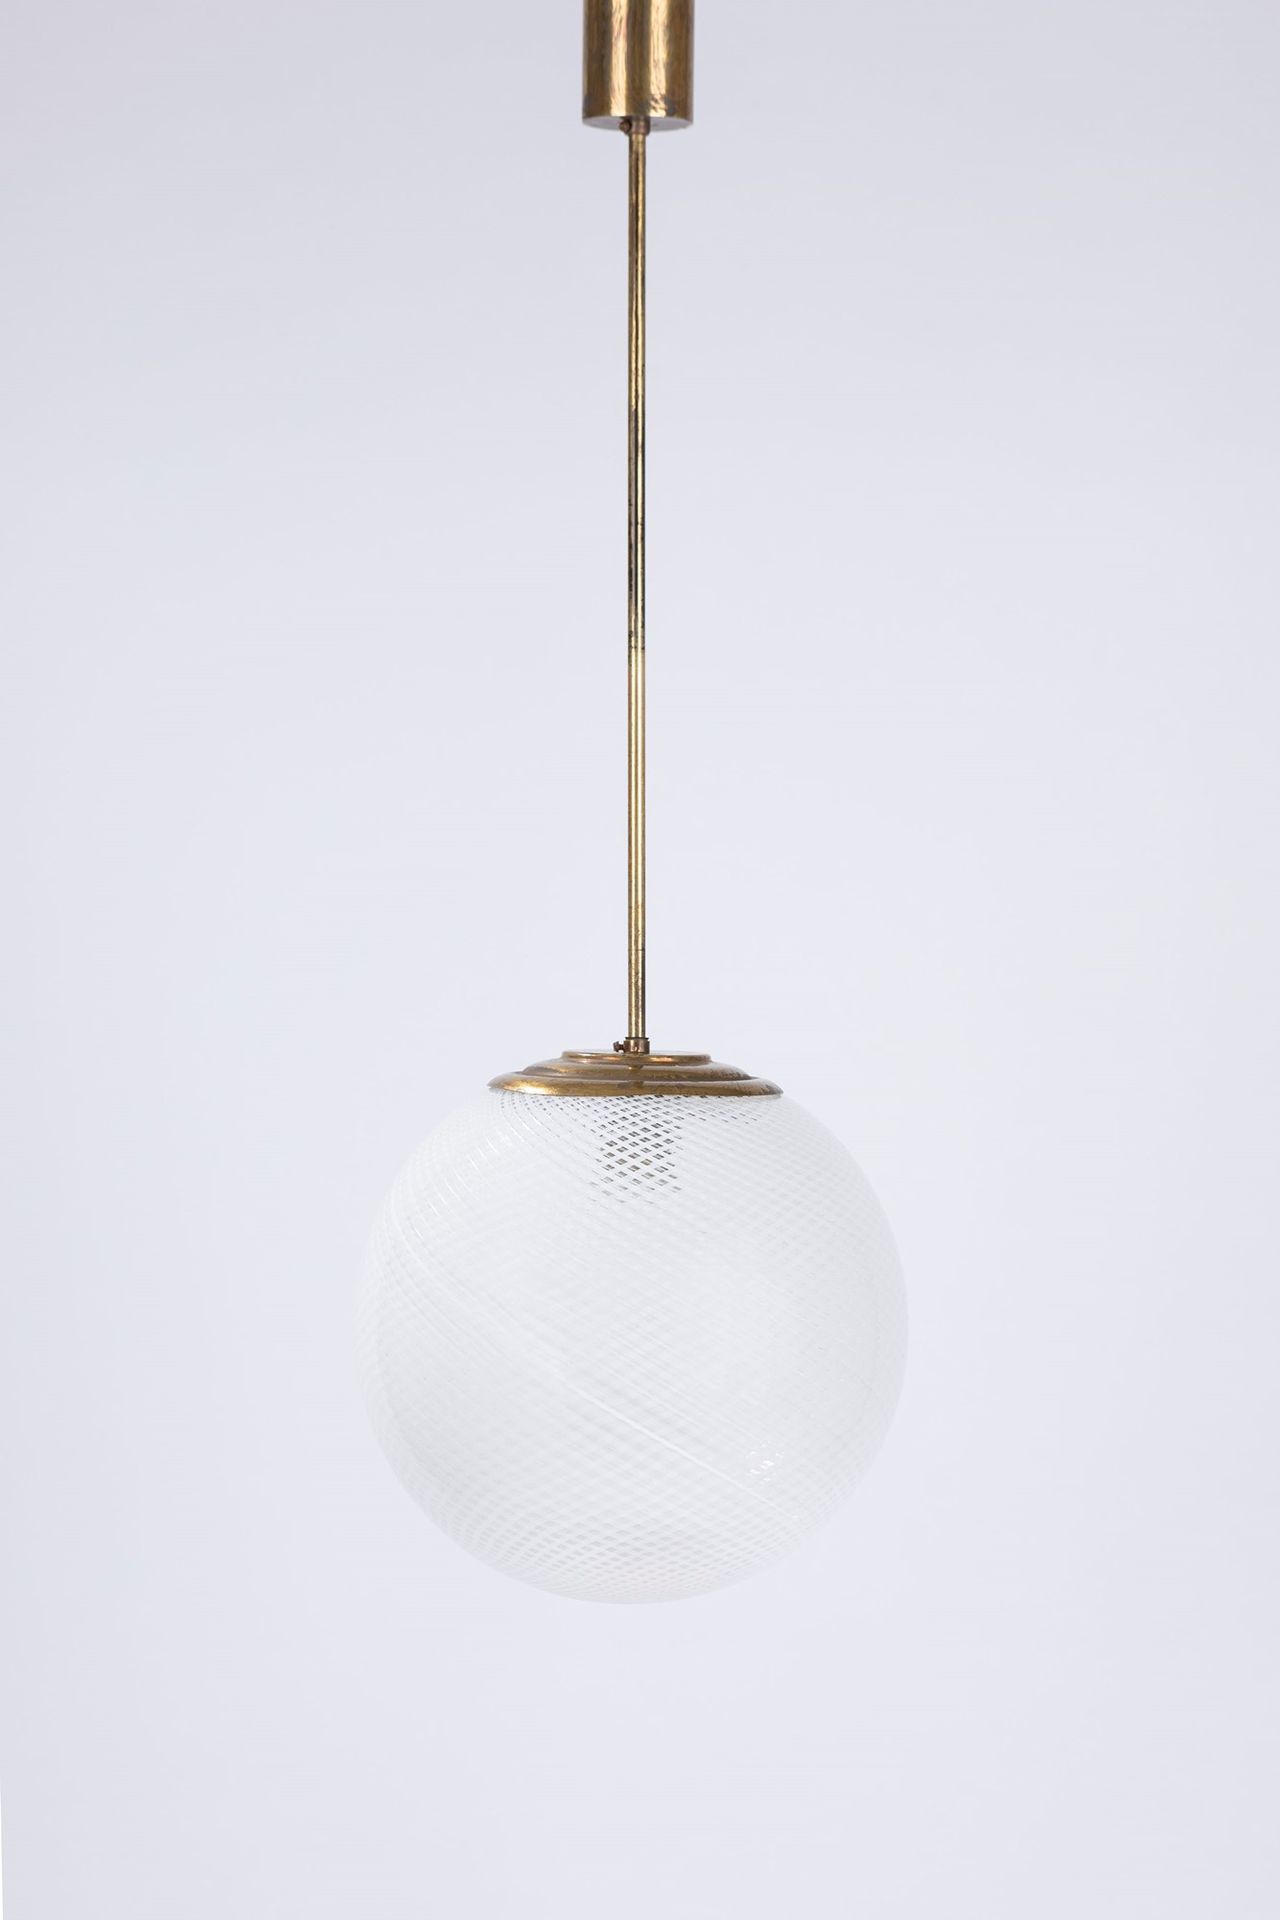 CARLO SCARPA Lampada a sospensione, 1930 circa

Diam 23 cm
vetro reticello, stru&hellip;